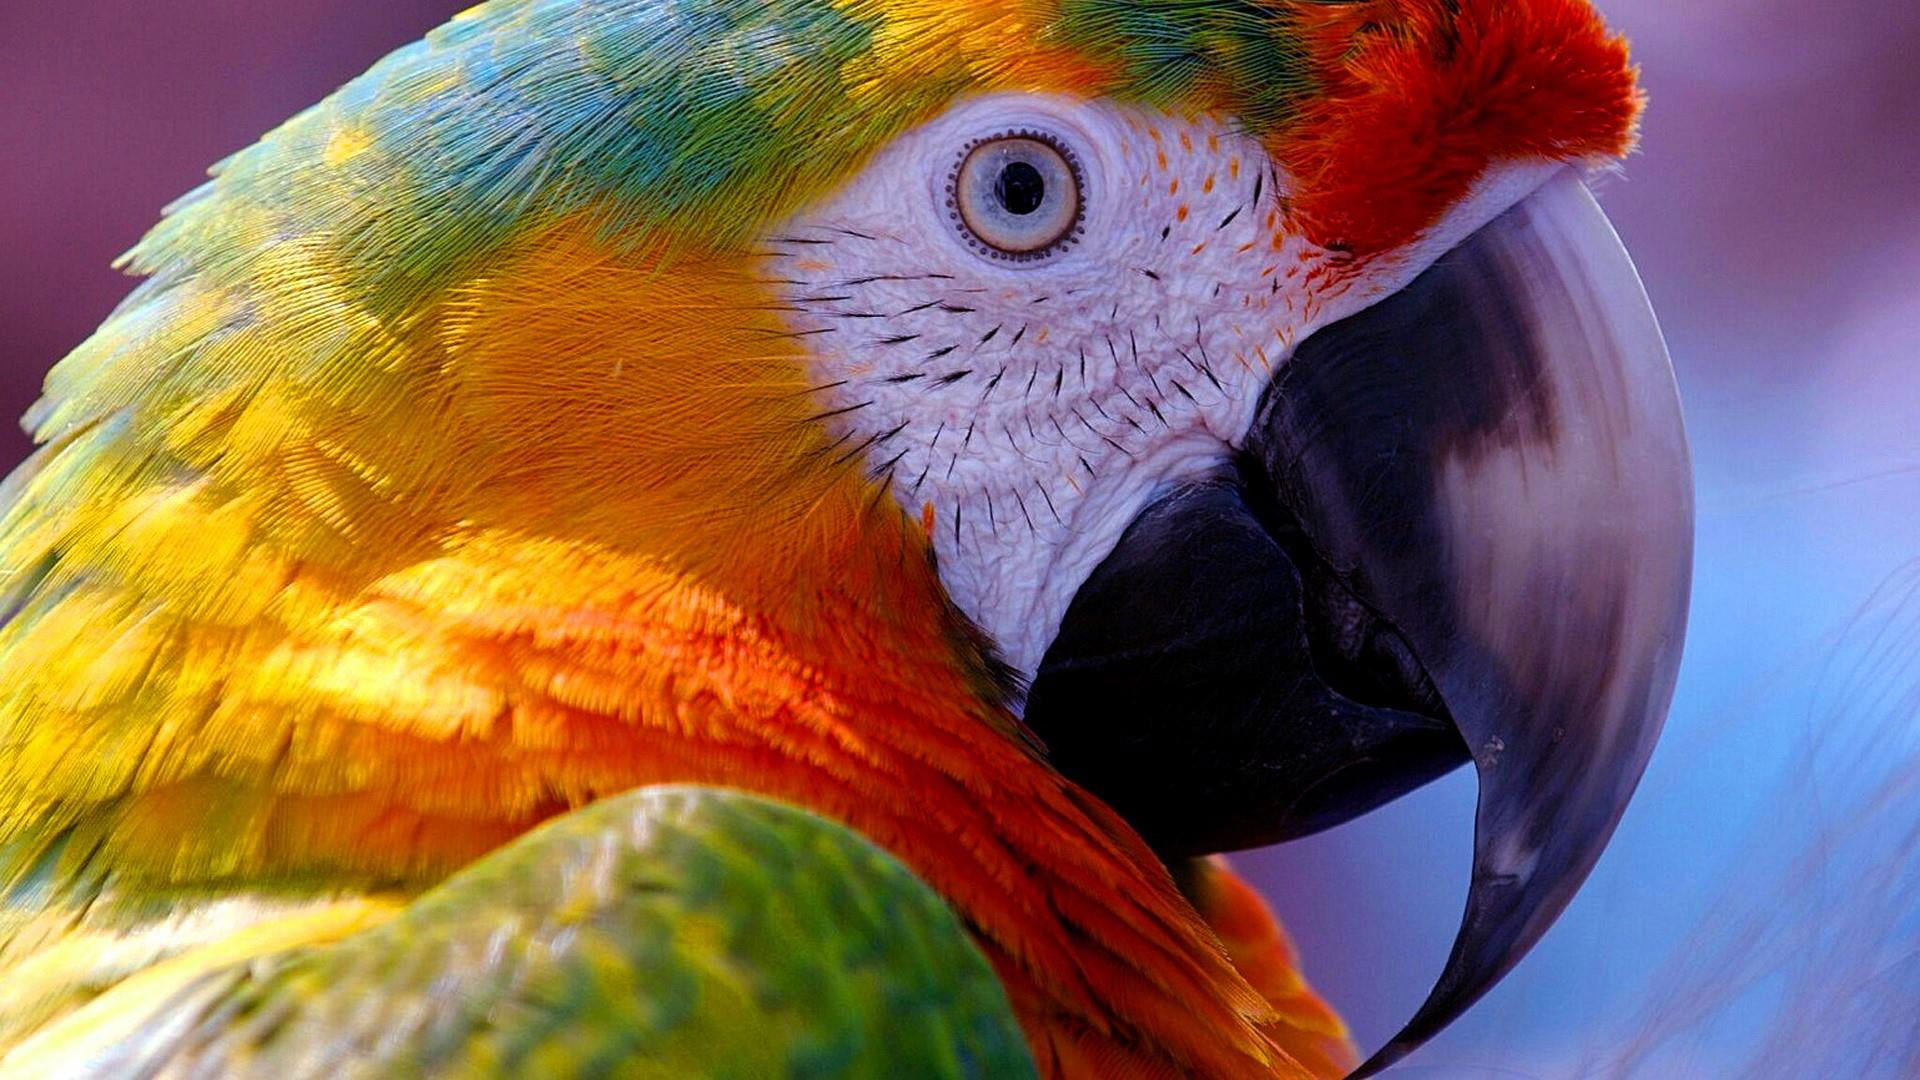 Beak wallpaper, bird, parrot, macaw, close up, feather, parakeet, macro photography